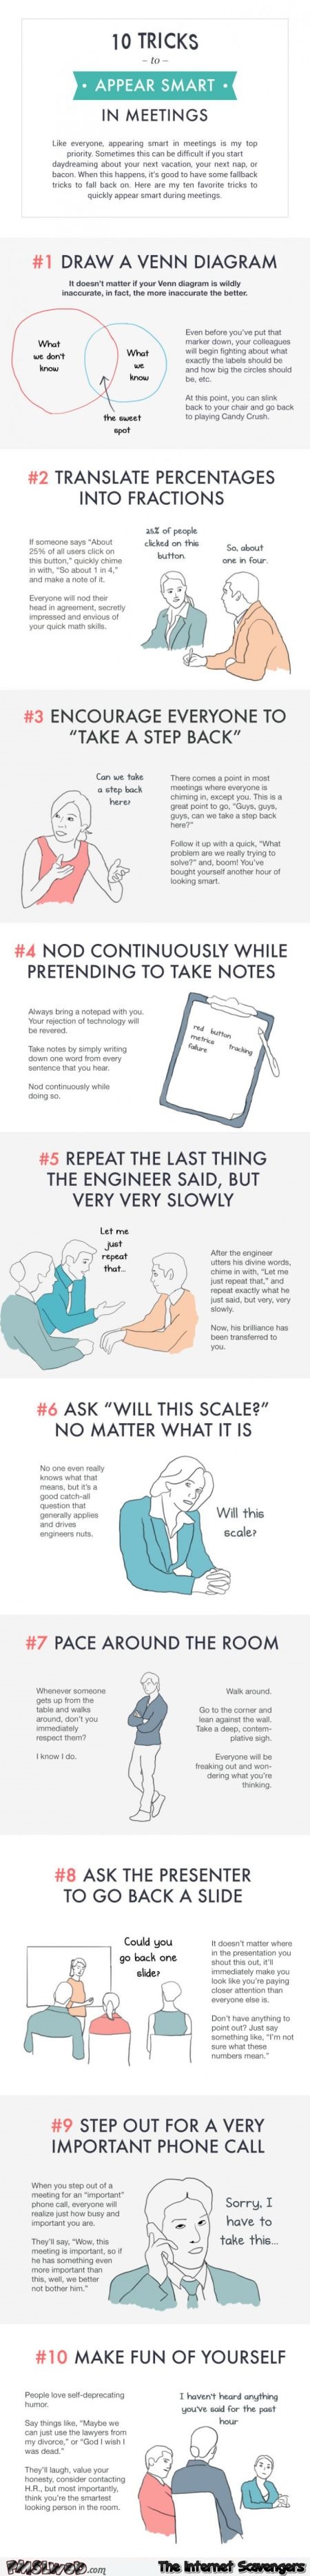 Ten tricks to look smart in meetings @PMSLweb.com